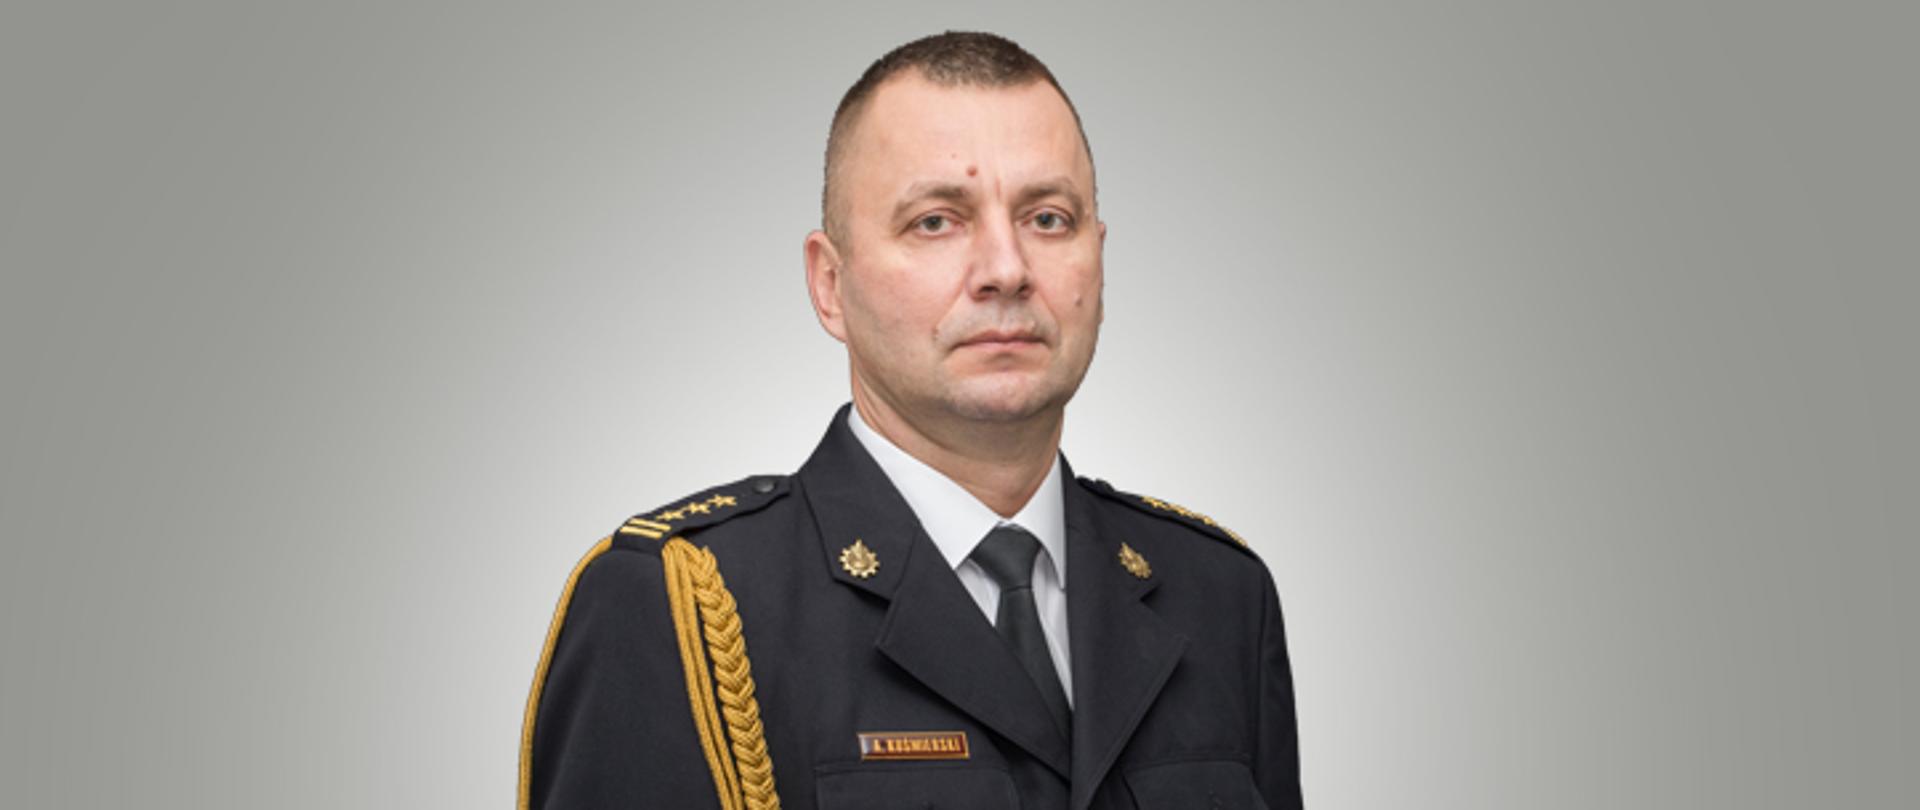 Zastępca Opolskiego Komendanta Wojewódzkiego PSP st. bryg. Arkadiusz Kuśmierski w mundurze galowym.